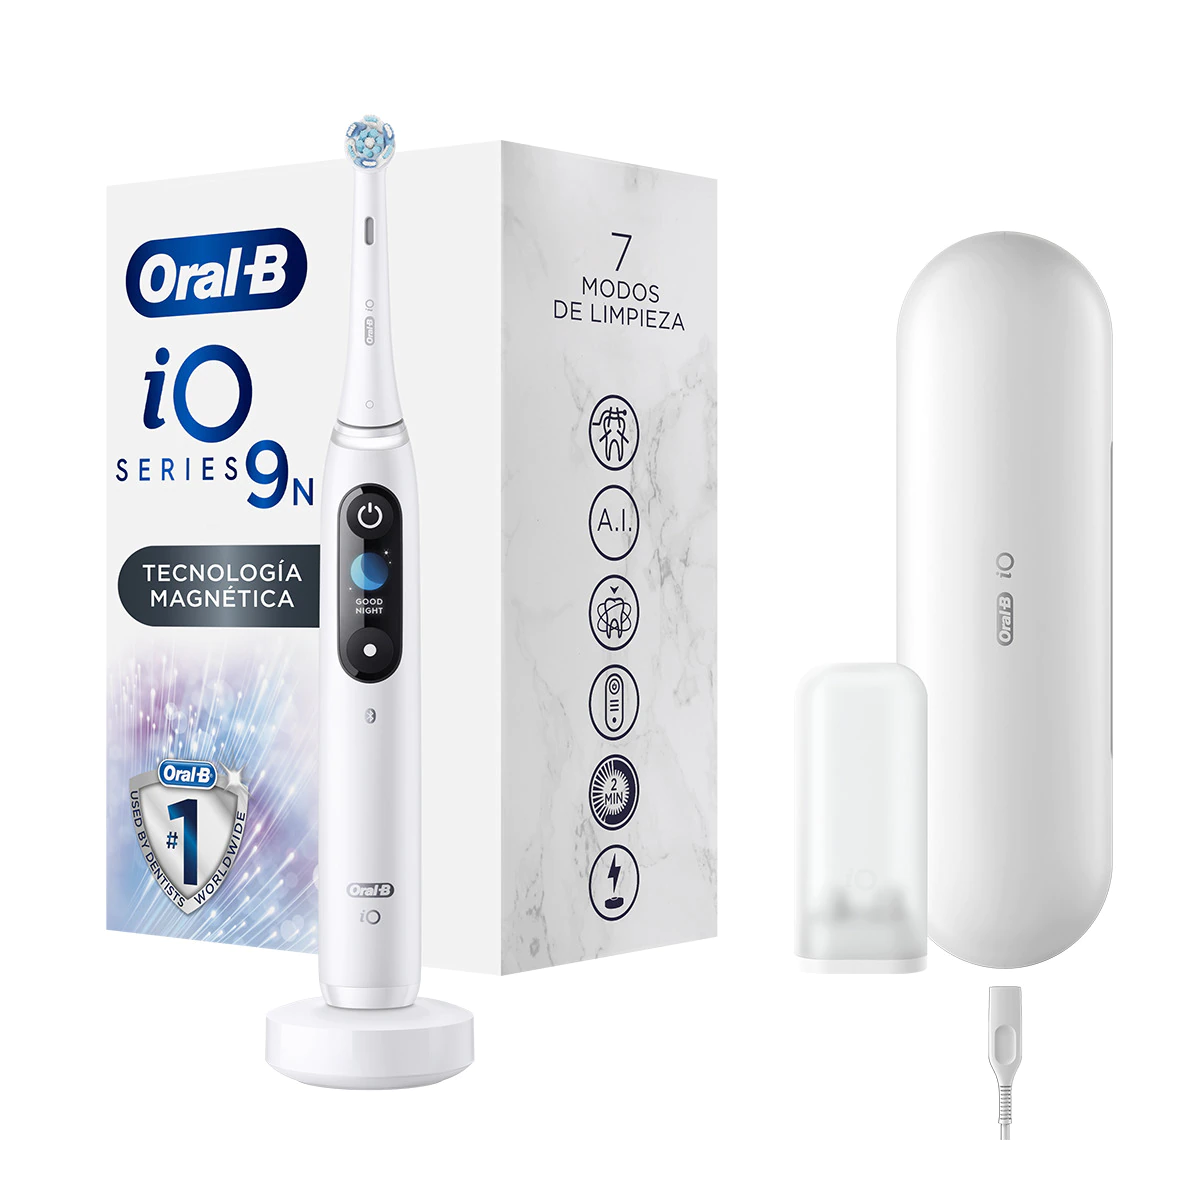 Cepillo de dientes eléctrico Braun Oral-B iO 9n 7 modos de limpieza